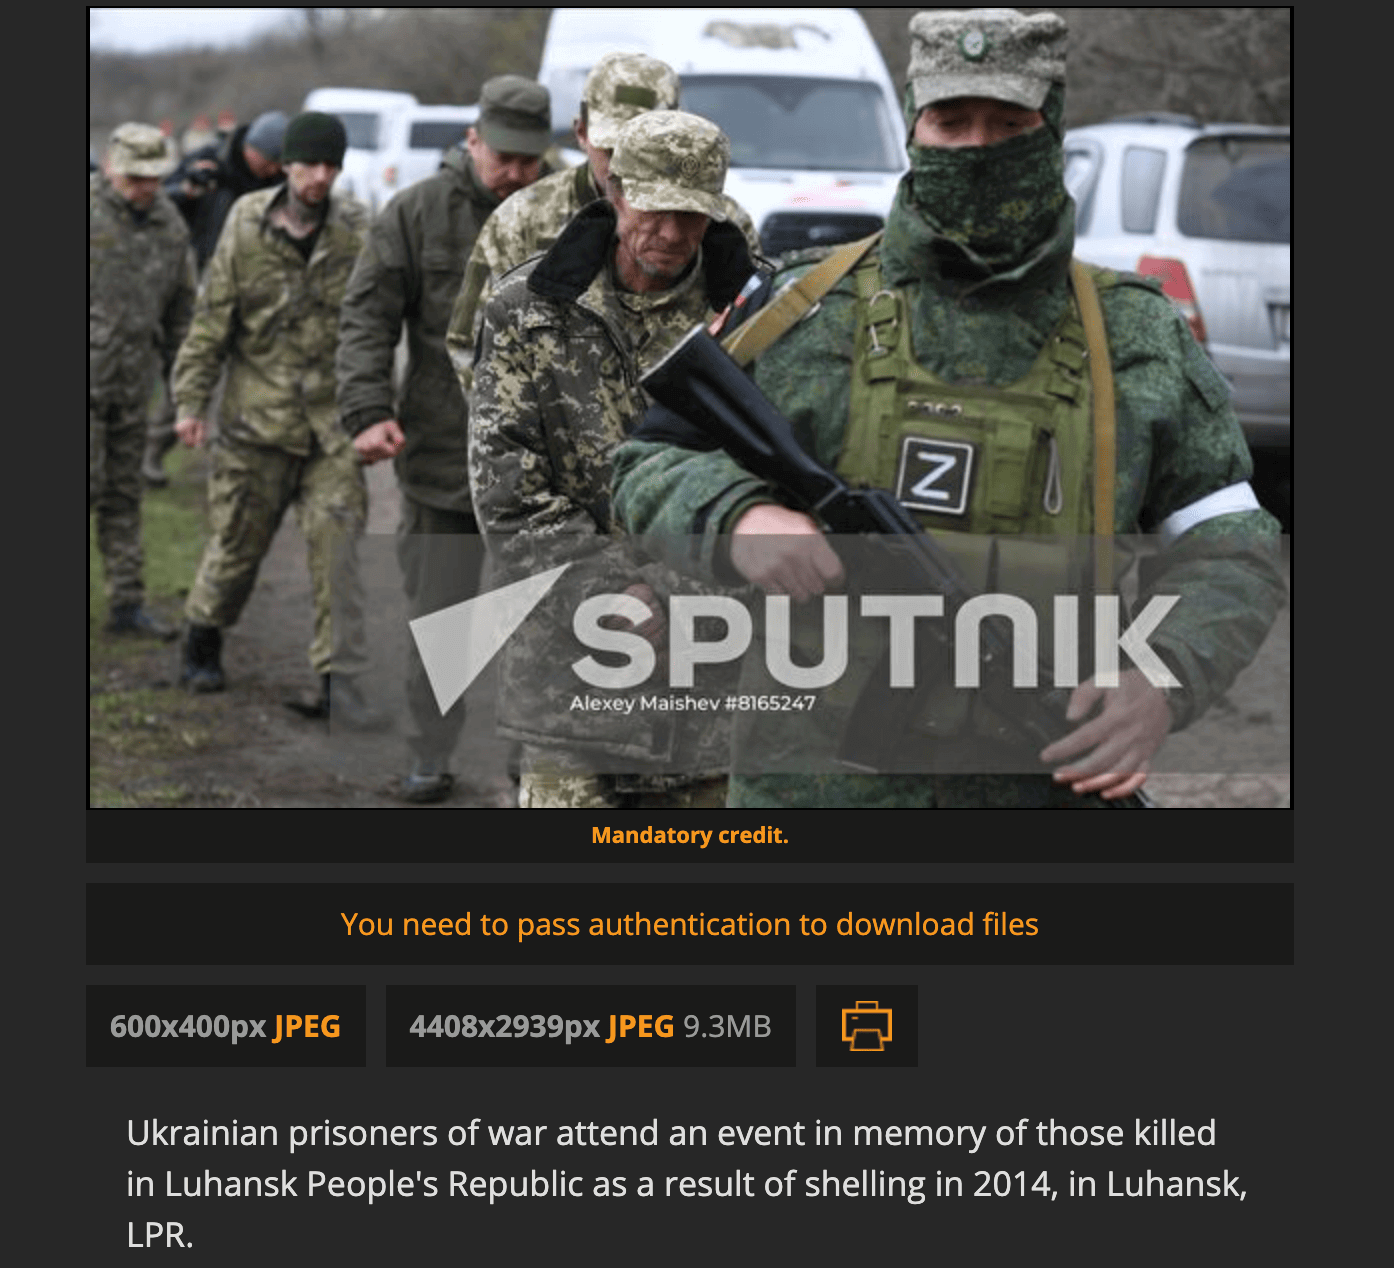 Laut der Nachrichtenagentur Sputnik entstand das Bild nicht in Mariupol in der Südukraine, sondern rund 250 Kilometer entfernt in Luhansk – einen Monat bevor es in Sozialen Netzwerken in falschem Kontext geteilt wurde